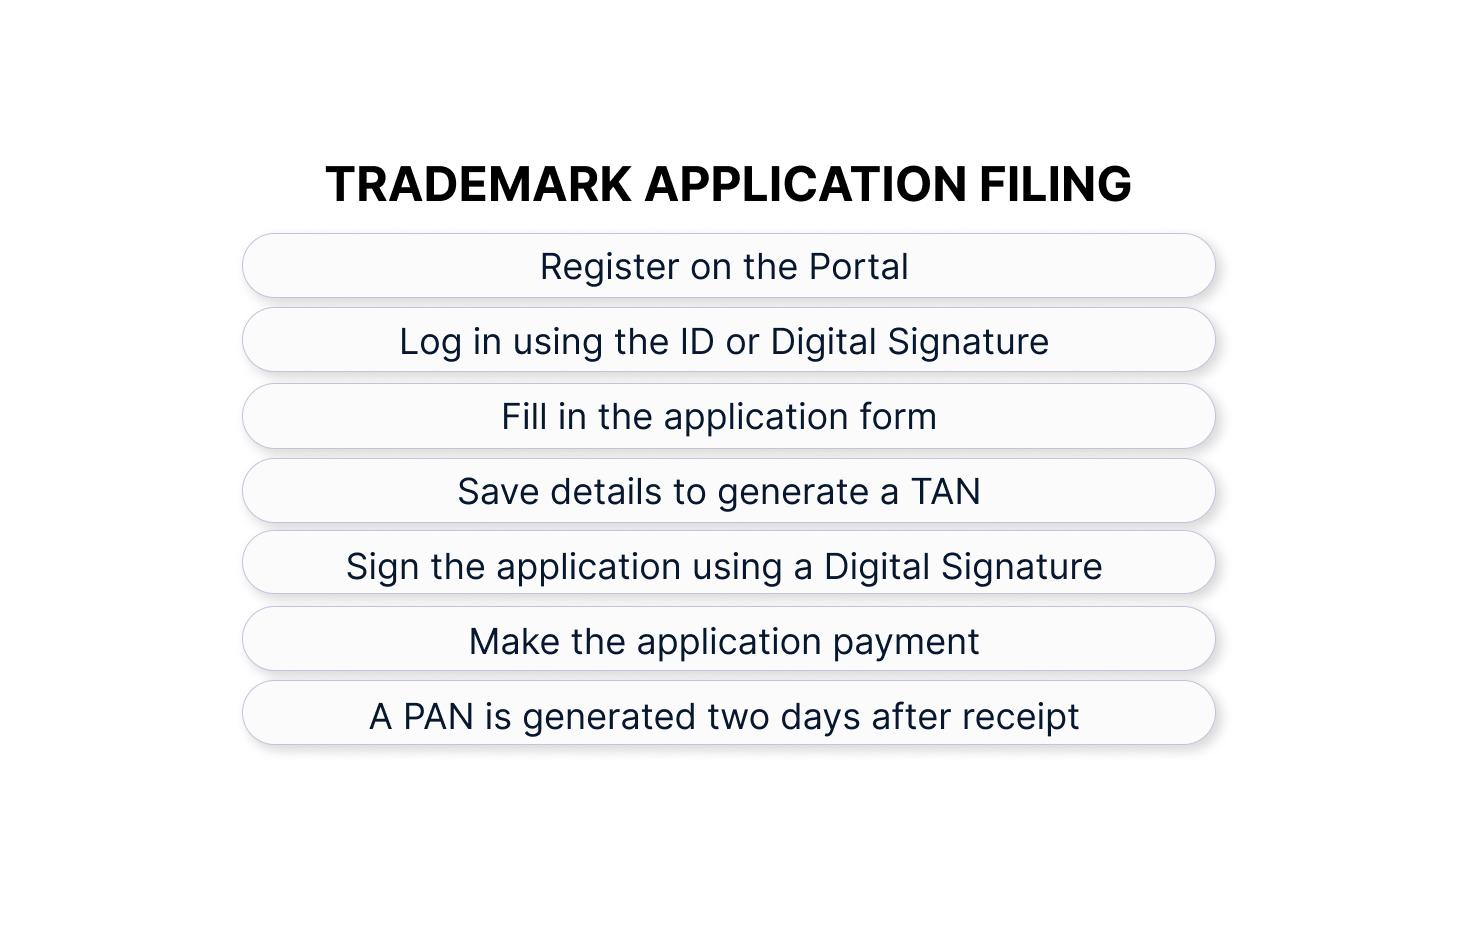 Trademark application filling infomation for trademark registration